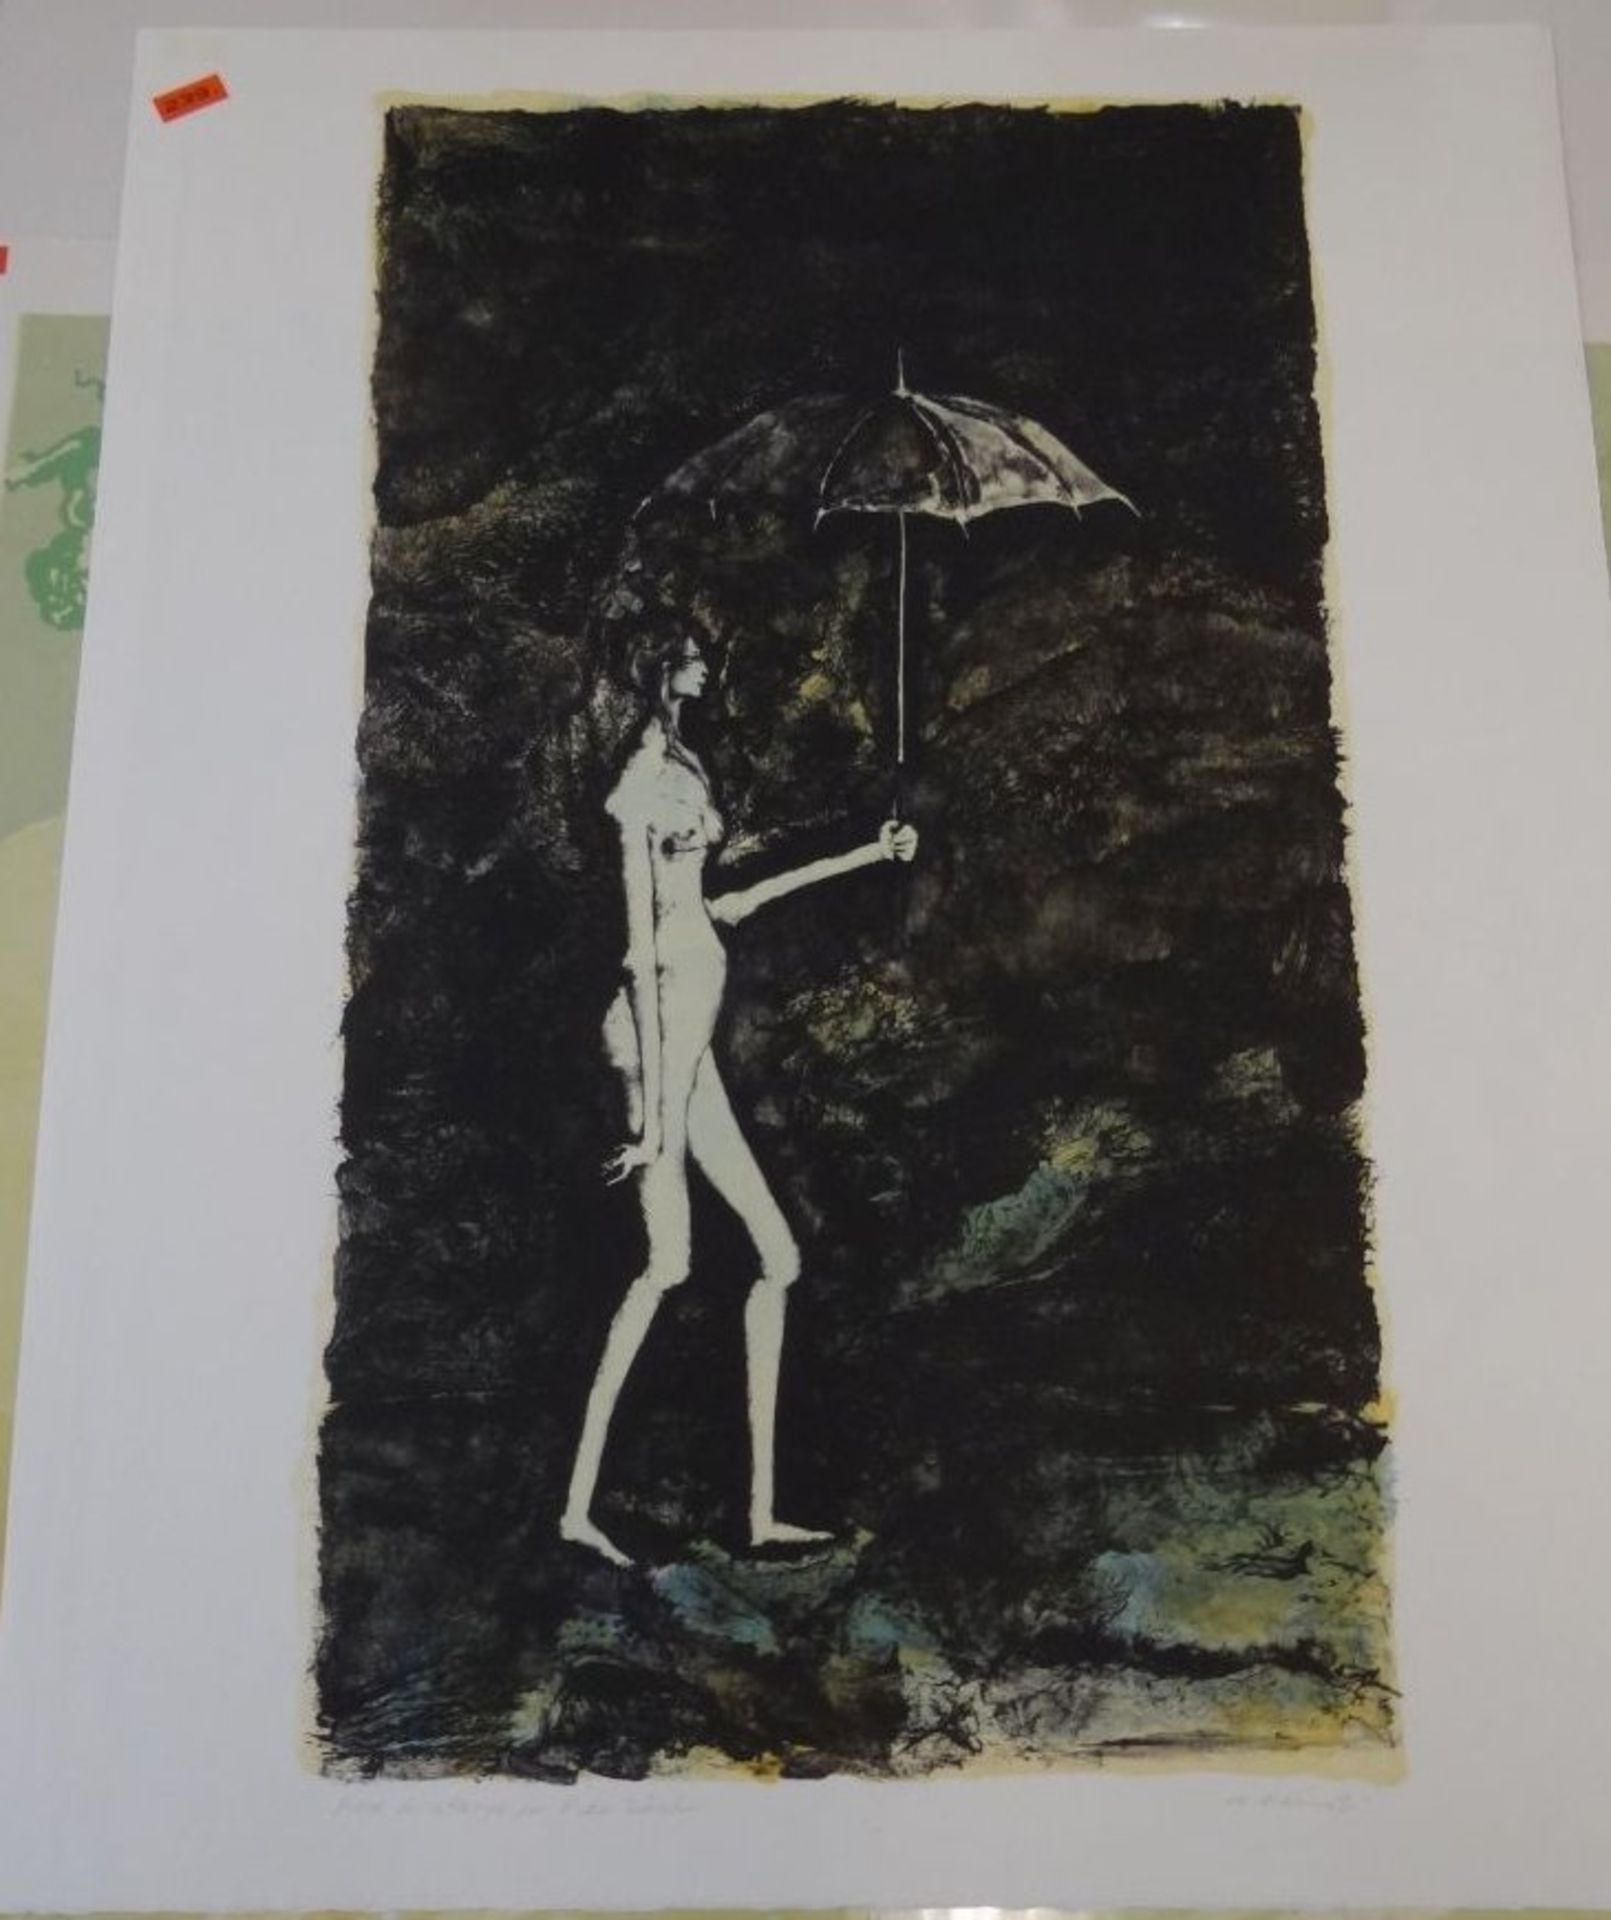 Michele MAINOLI, 1966 (1927-1991) Nackte mit Regenschirm, Litho, BG 56x45 cm